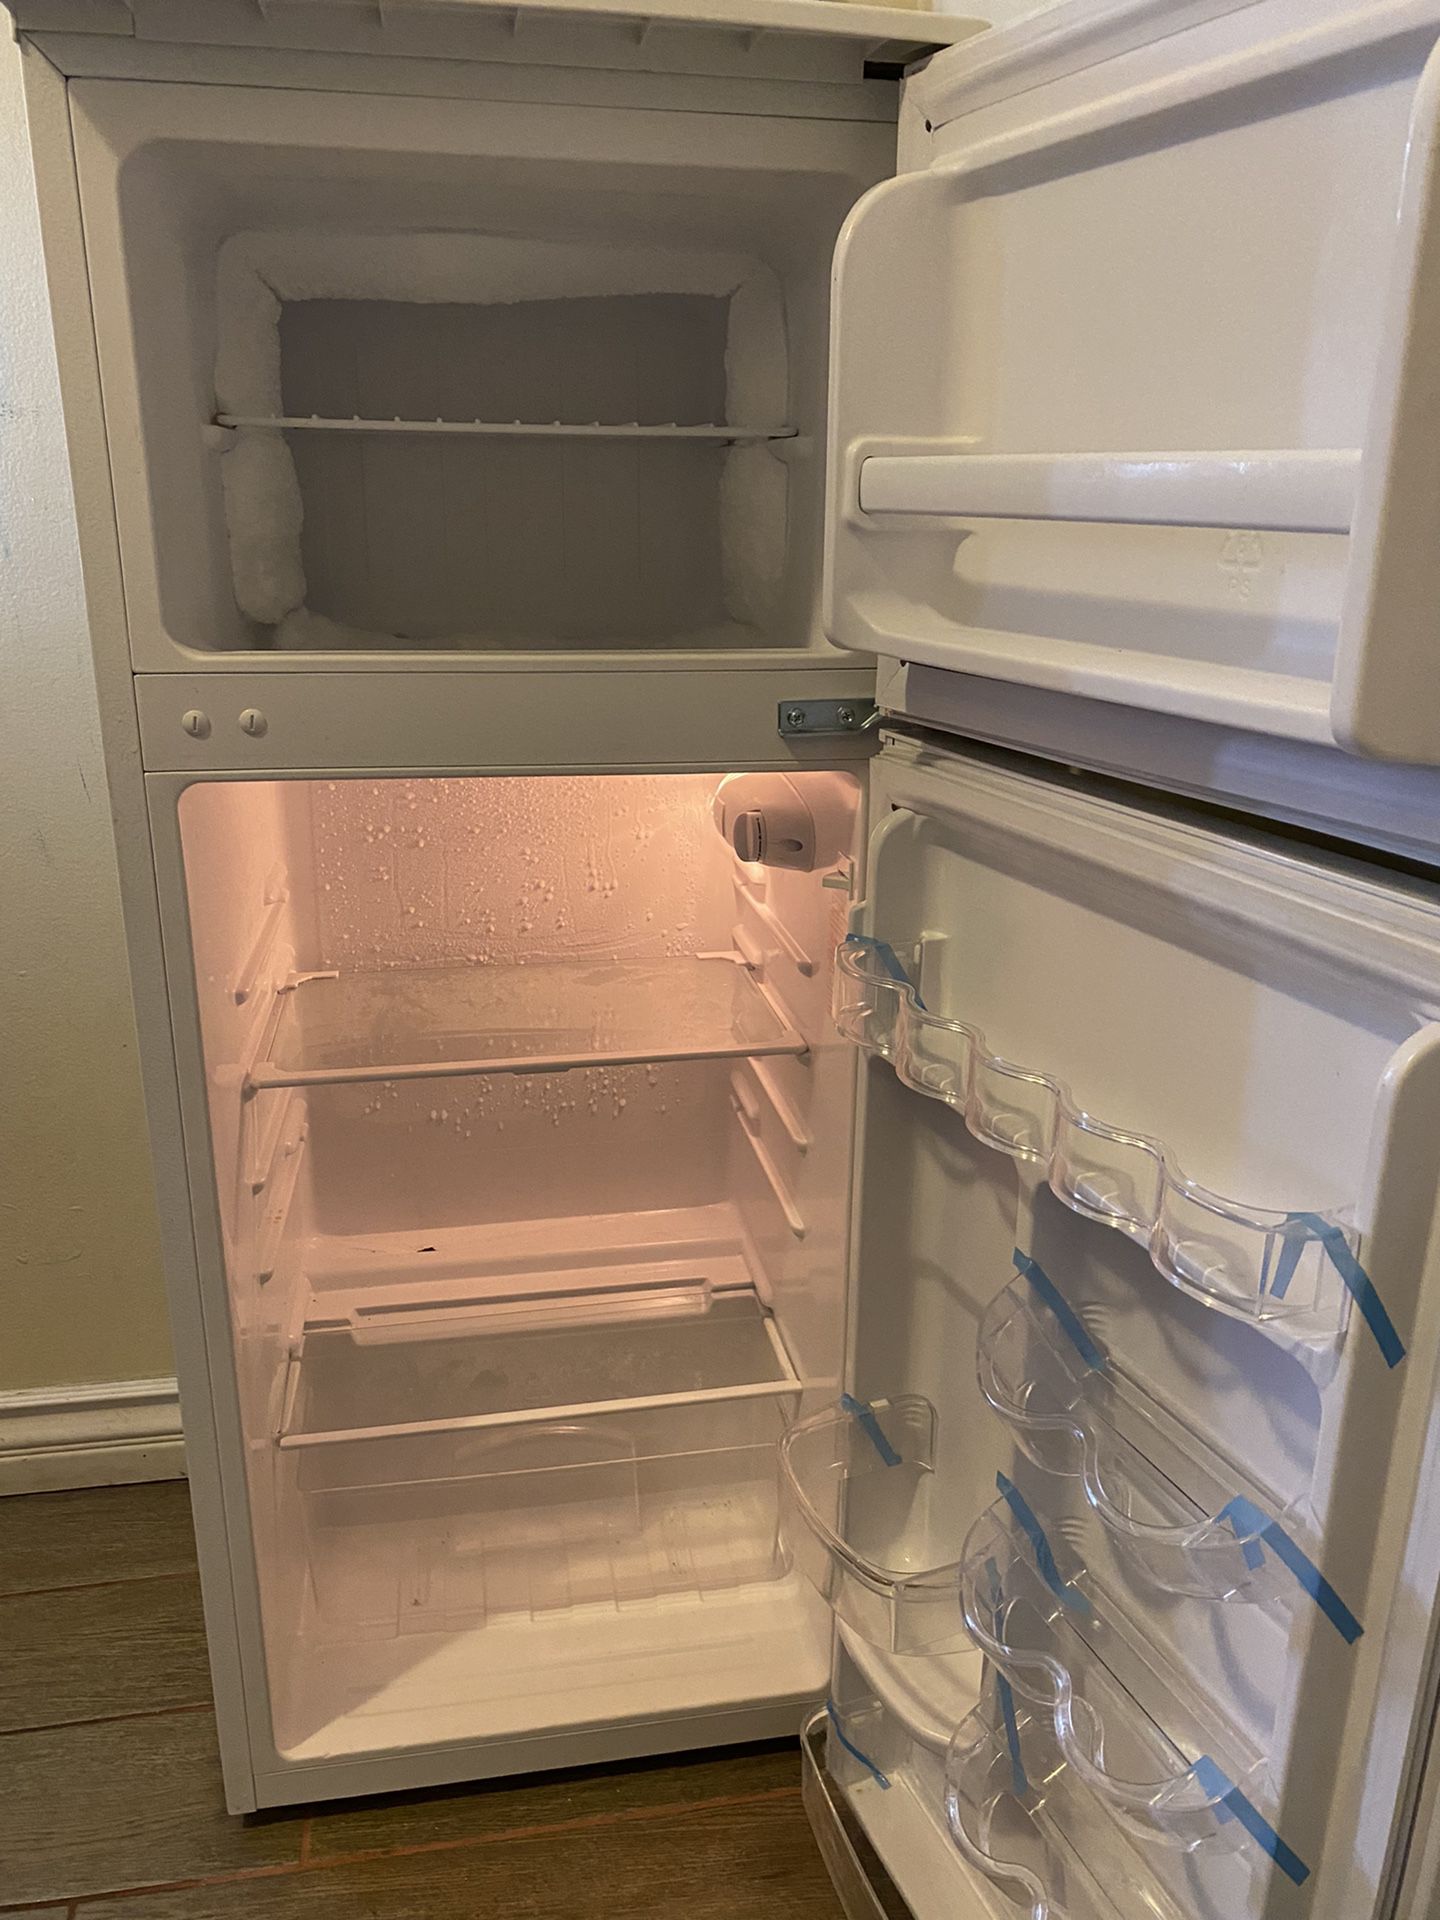 Small Refrigerator Used